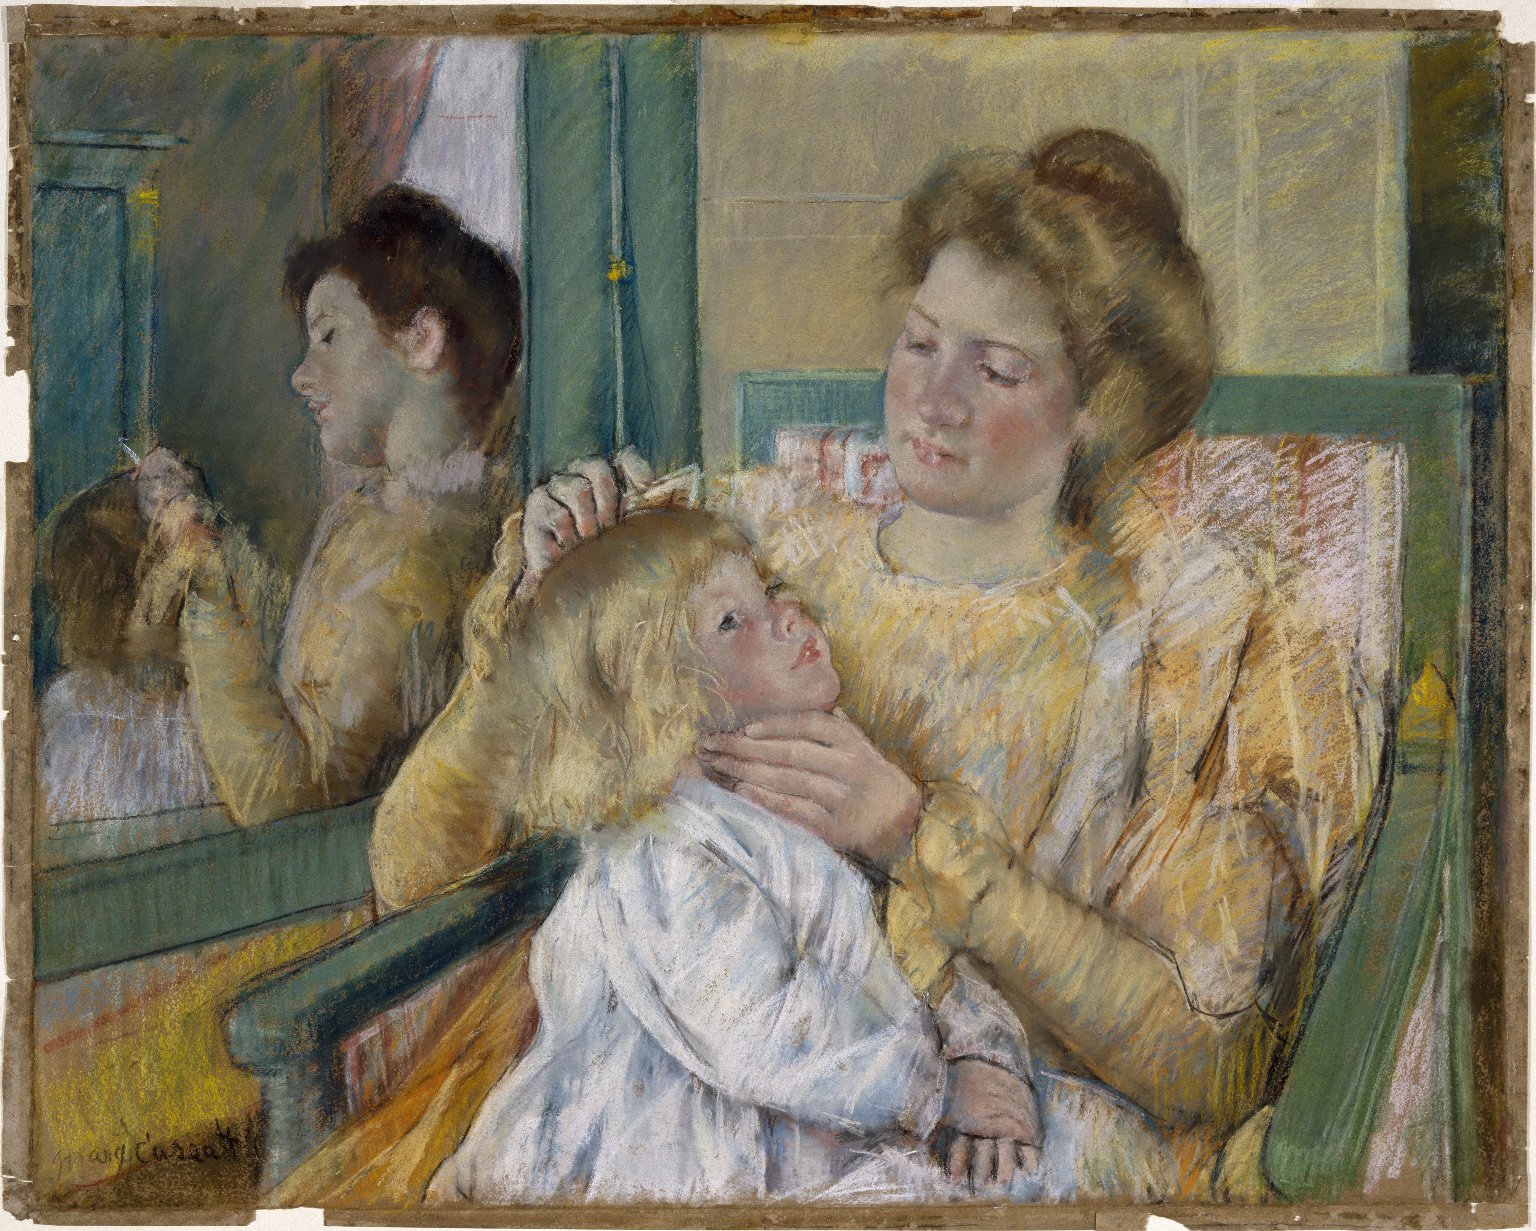 Mamă pieptănând părul copilului ei  by Mary Cassatt - 1901 - 64.1 x 80.3 cm 